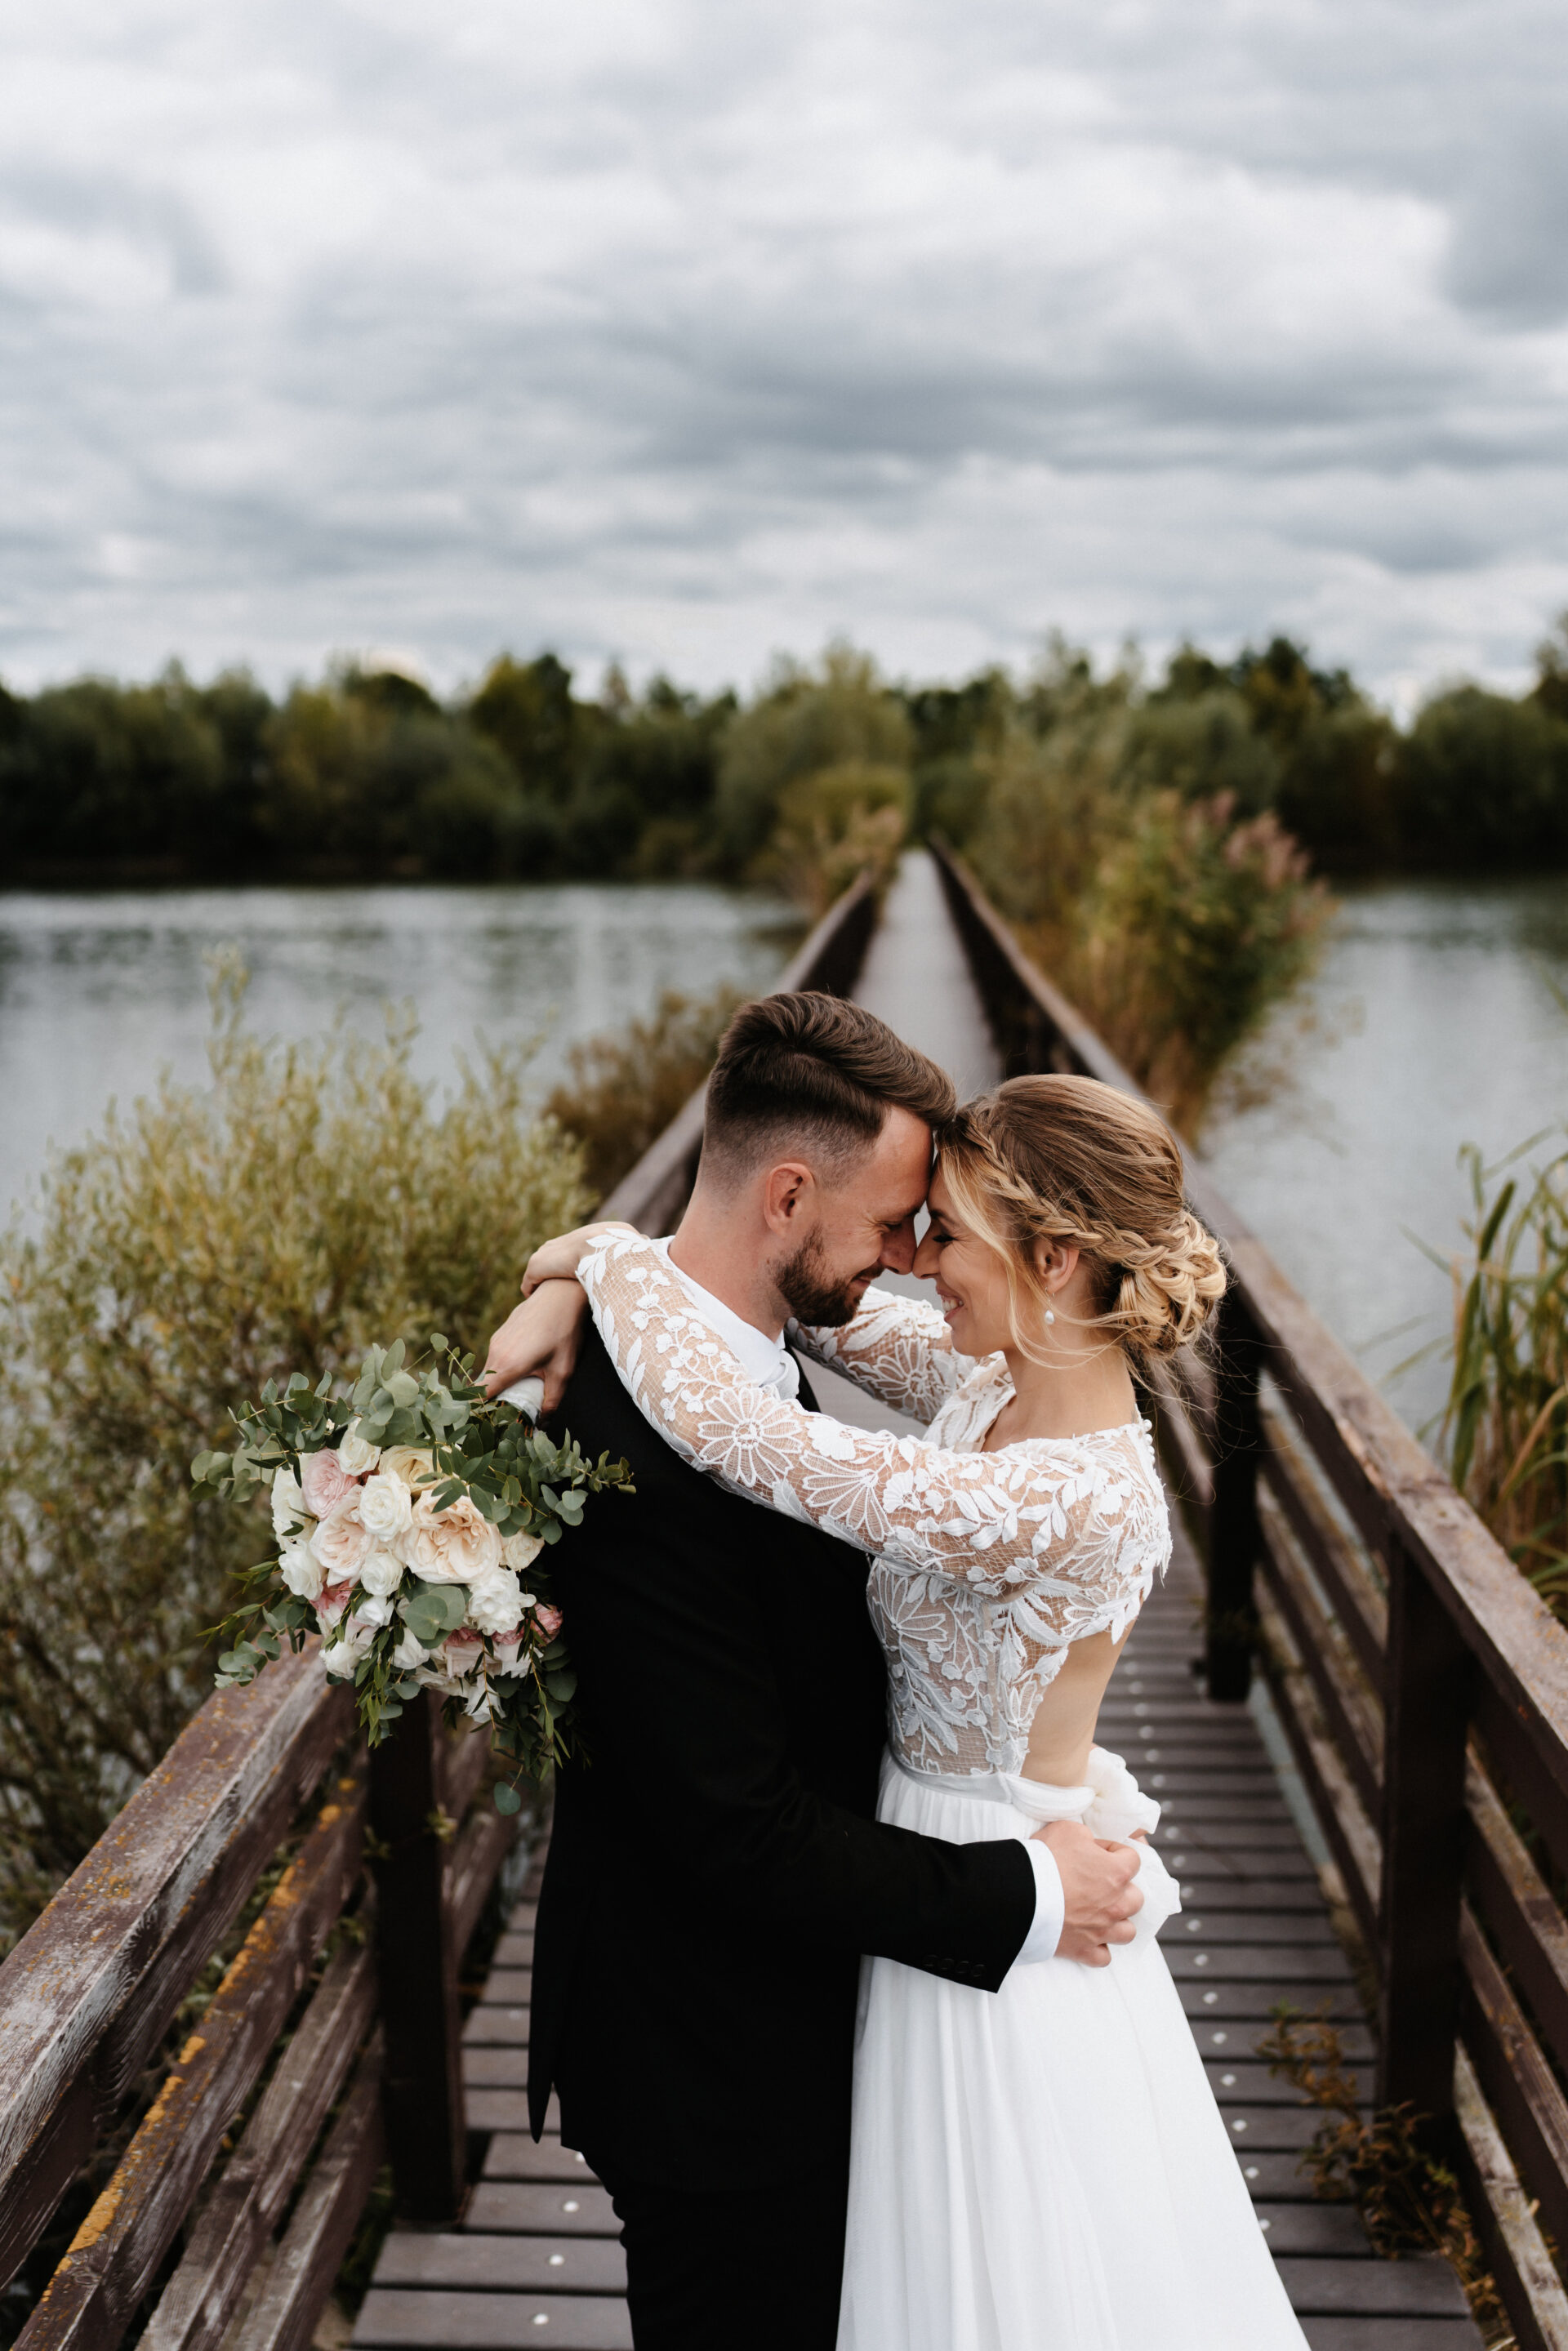 Svatební fotograf - svatební fotografie nevěsta a ženich